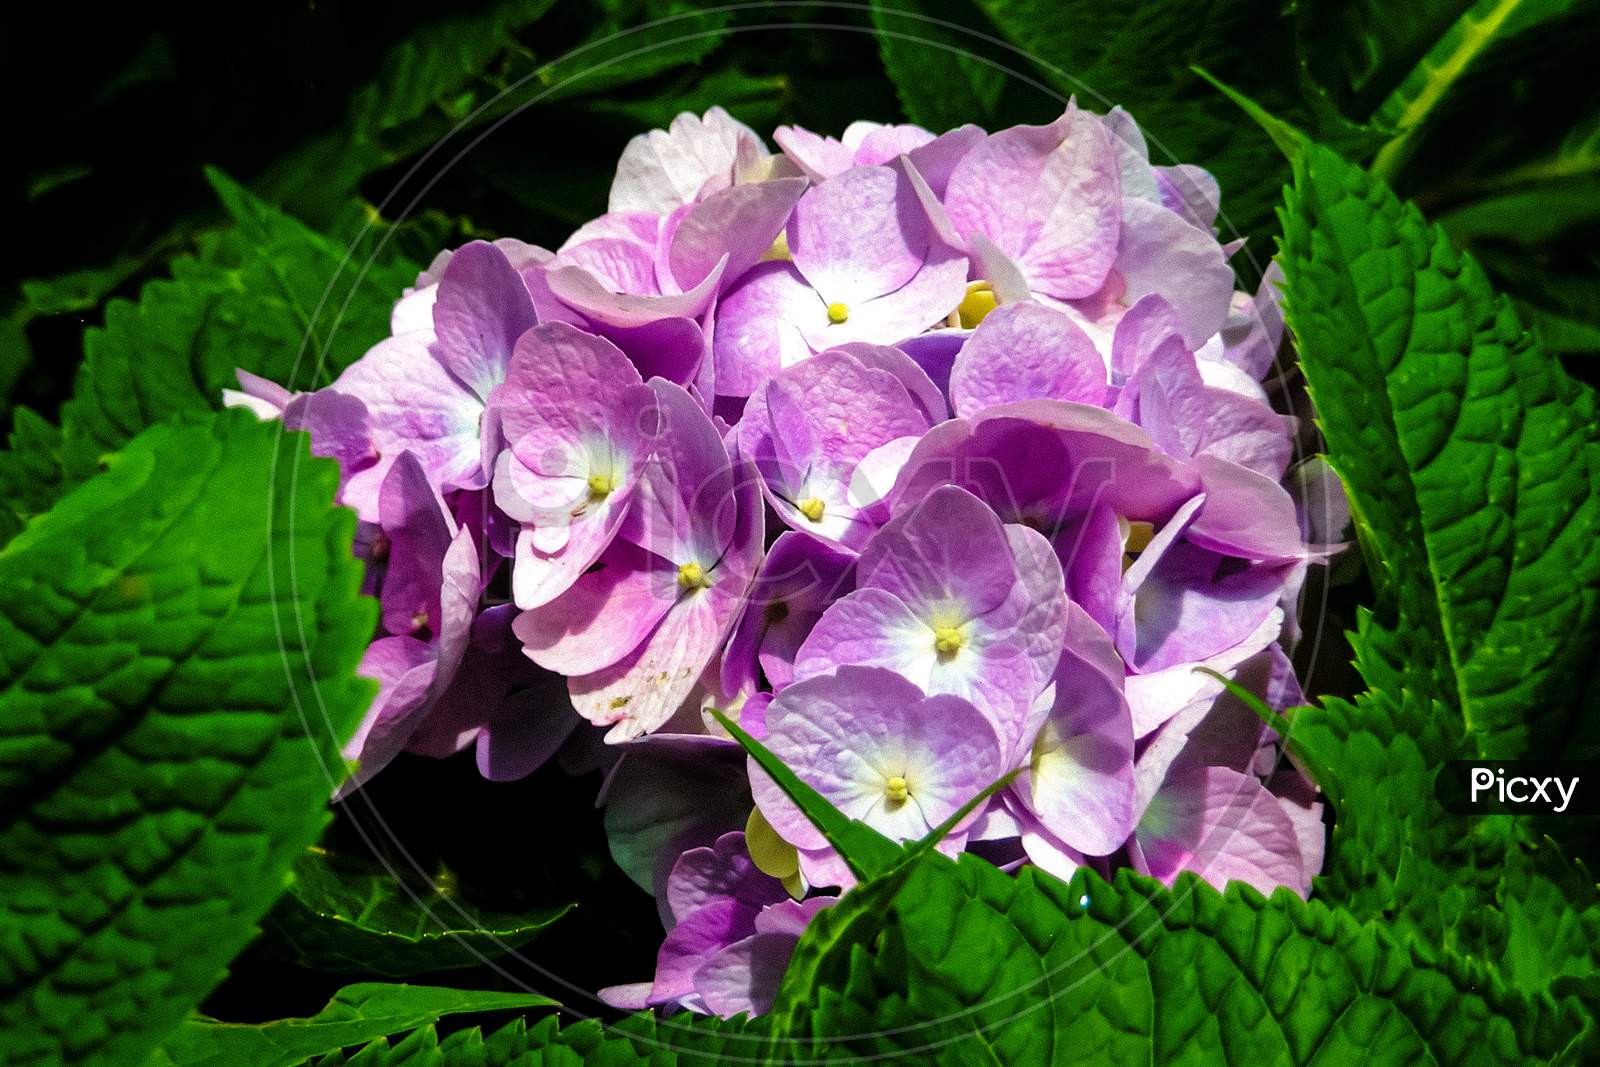 The beautiful Purple Hydrangea flower.